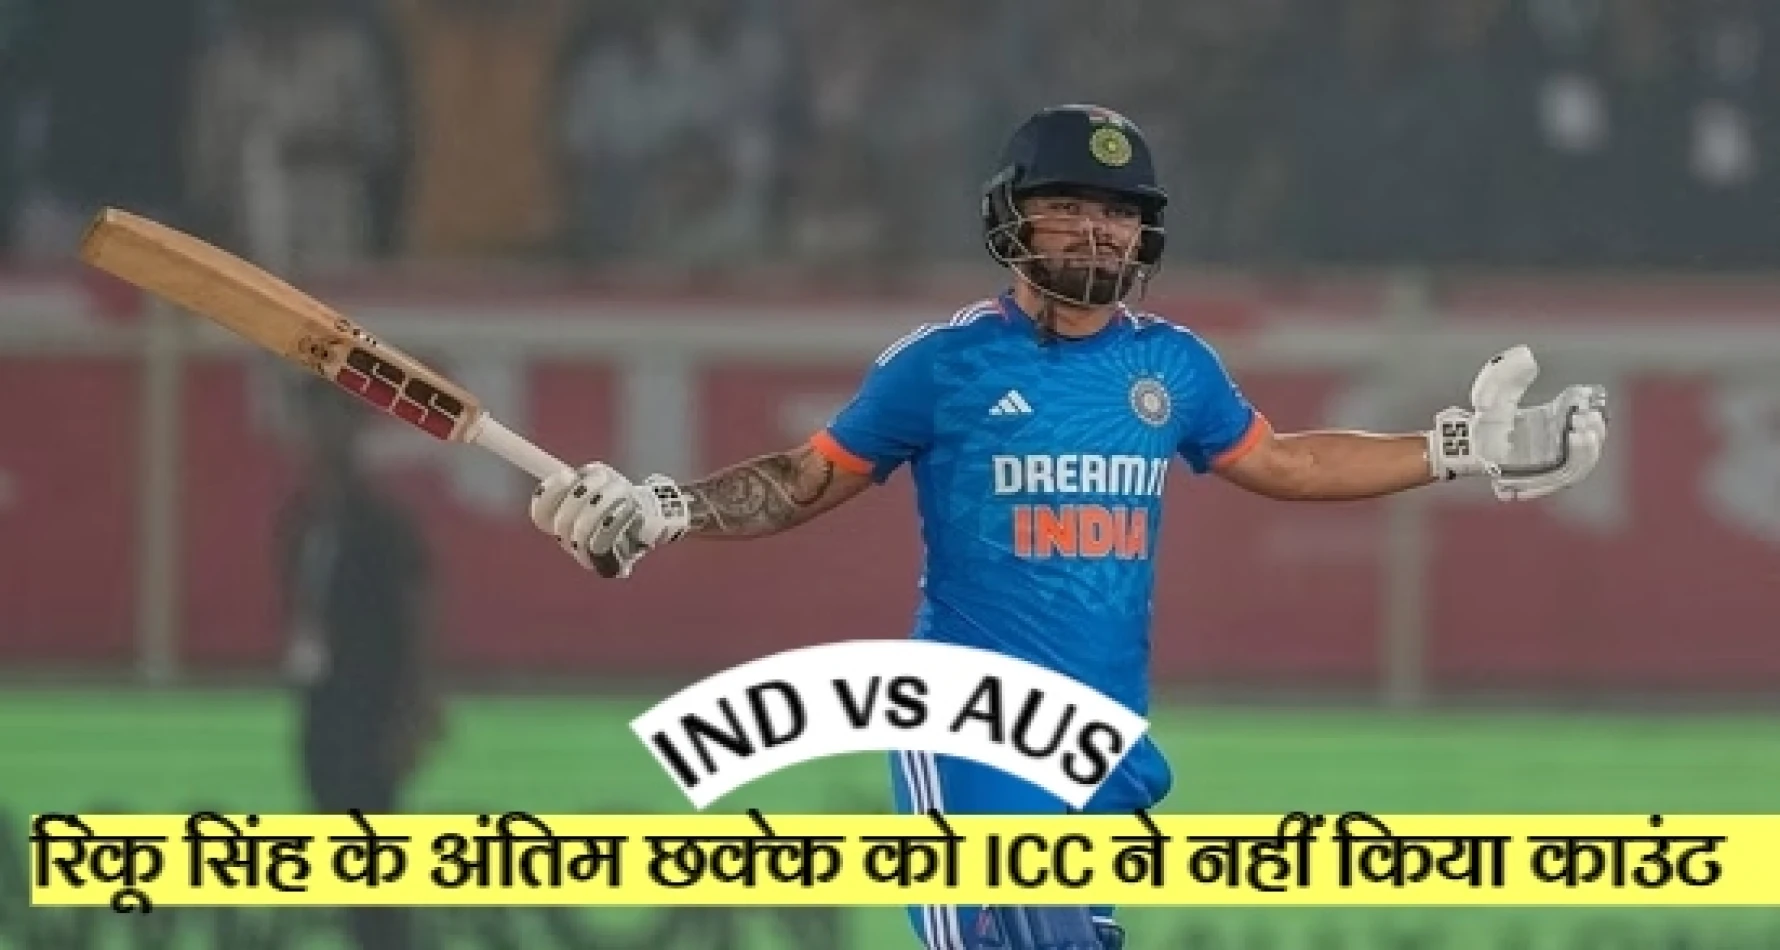 IND vs AUS: भारतीय क्रिकेट टीम के घातक बल्लेबाज रिंकू सिंह के अंतिम छक्के को इंटरनेशनल क्रिकेट काउंसिल ने नहीं किया काउंट, जानें किस वजह से हुआ ऐसा वाक्या